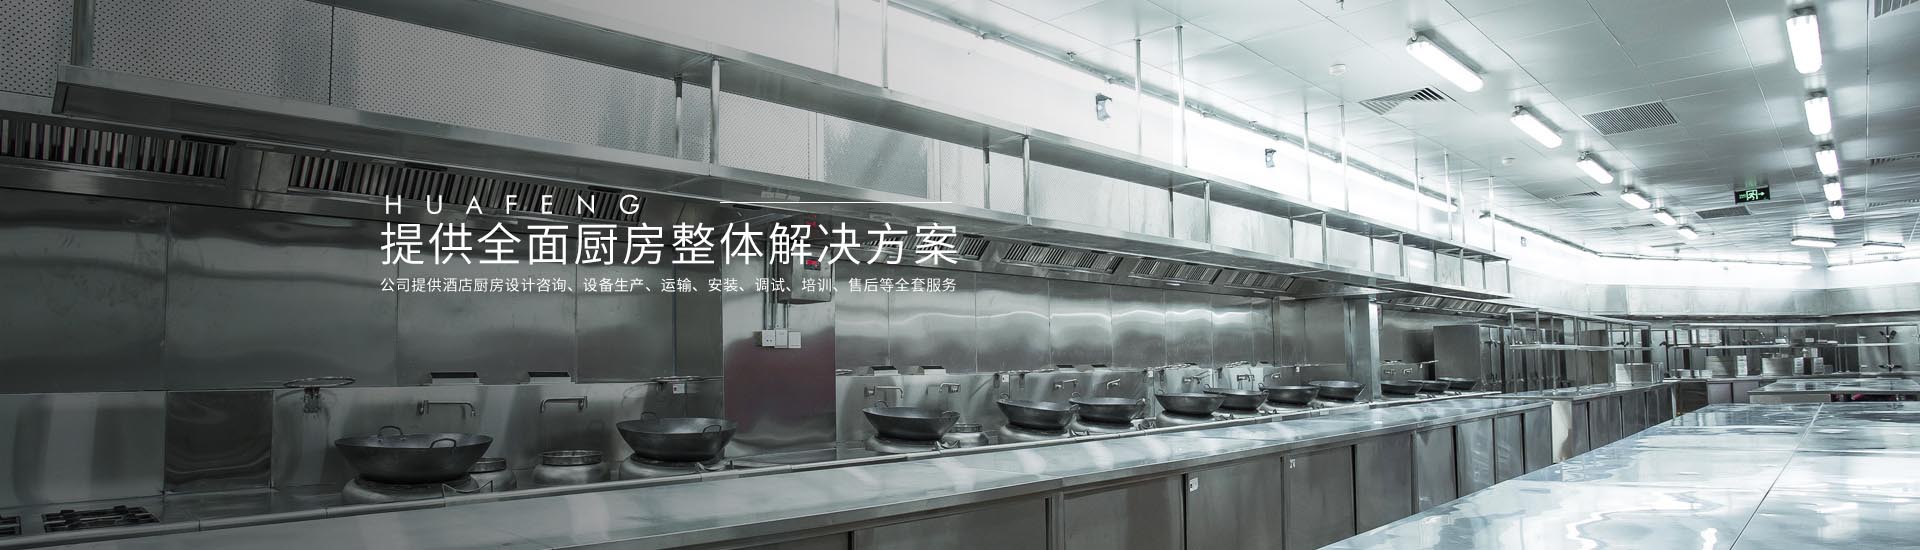 青岛酒店厨房设备批发厂家